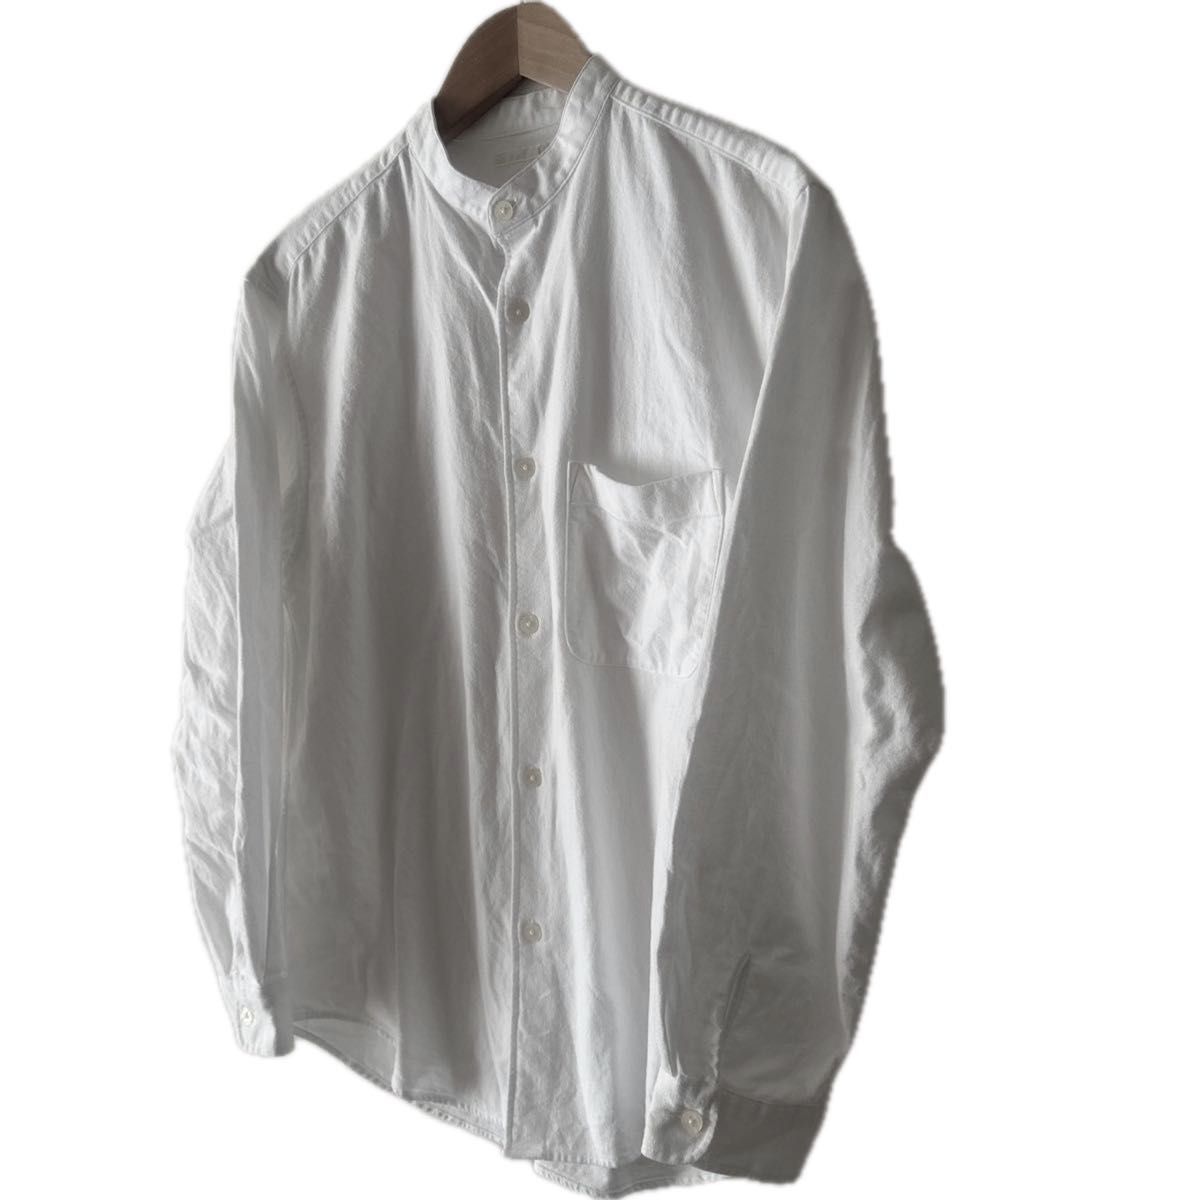 GU ジーユー メンズ フランネルリラックスフィットバンドカラー長袖シャツ USED S ホワイト